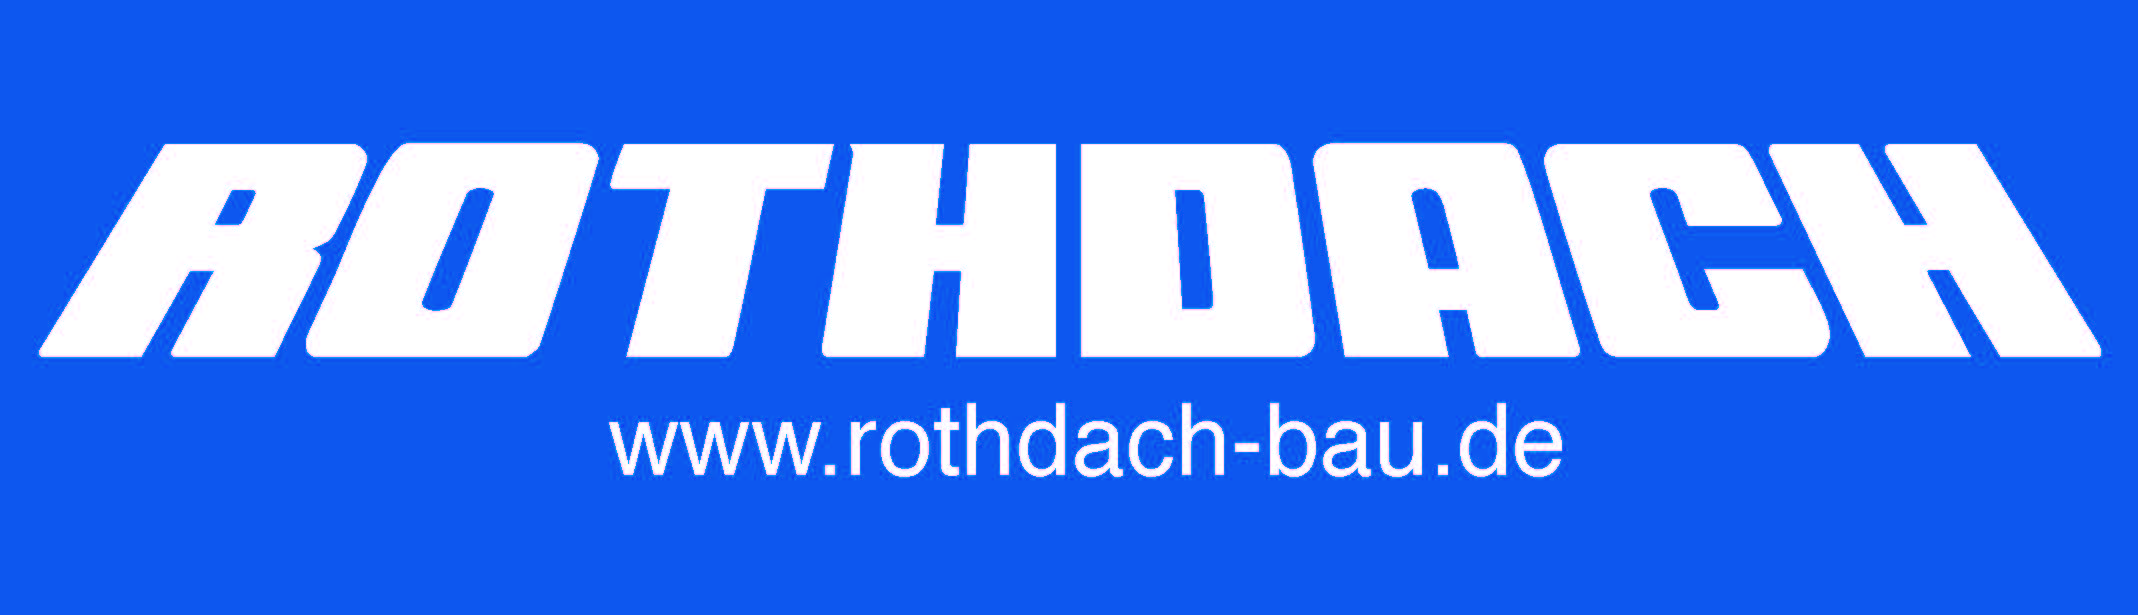 rothdach_logo_4c